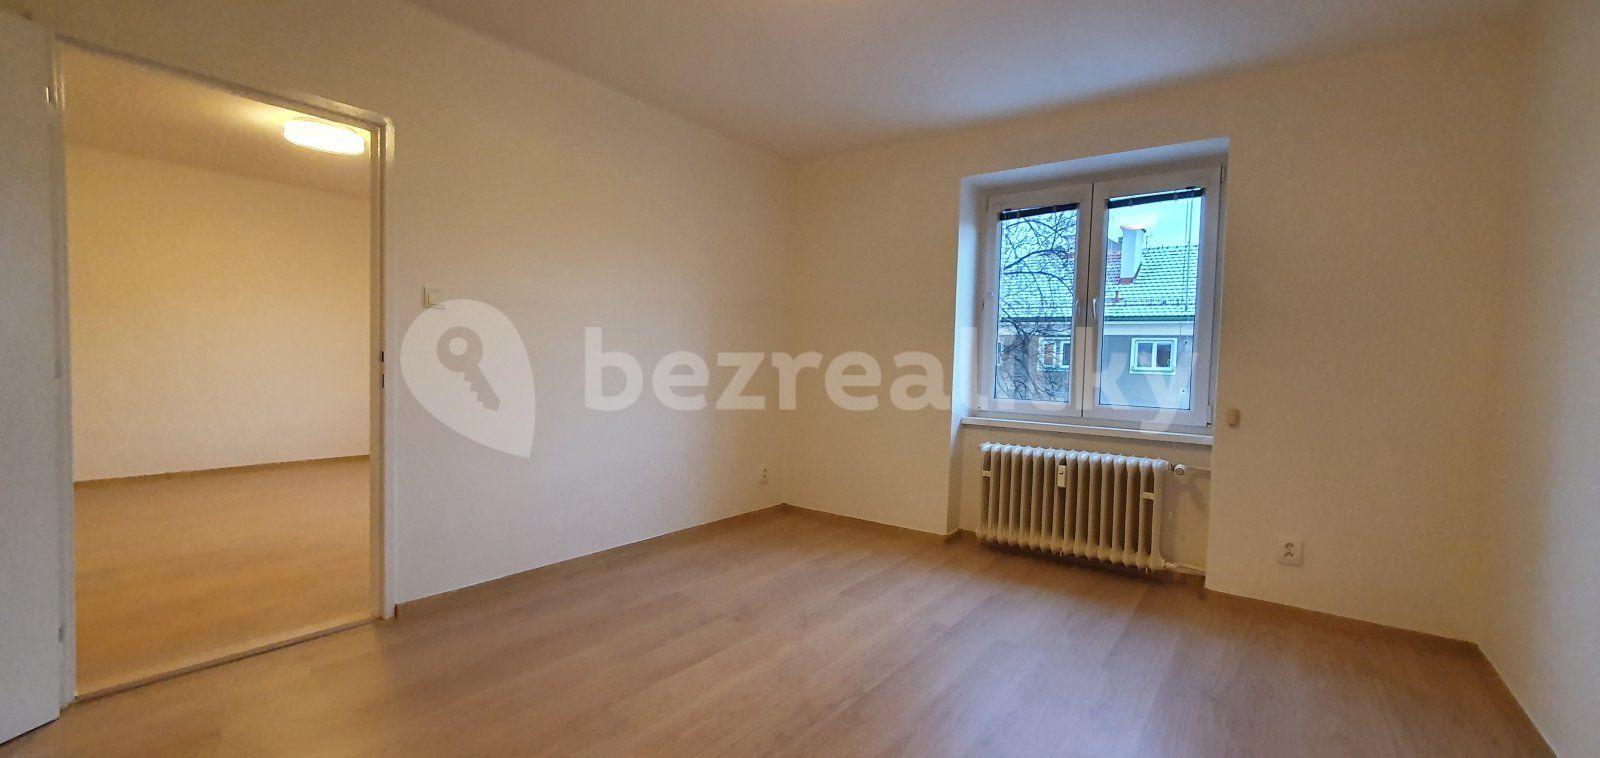 2 bedroom flat to rent, 53 m², Okružní, Havířov, Moravskoslezský Region